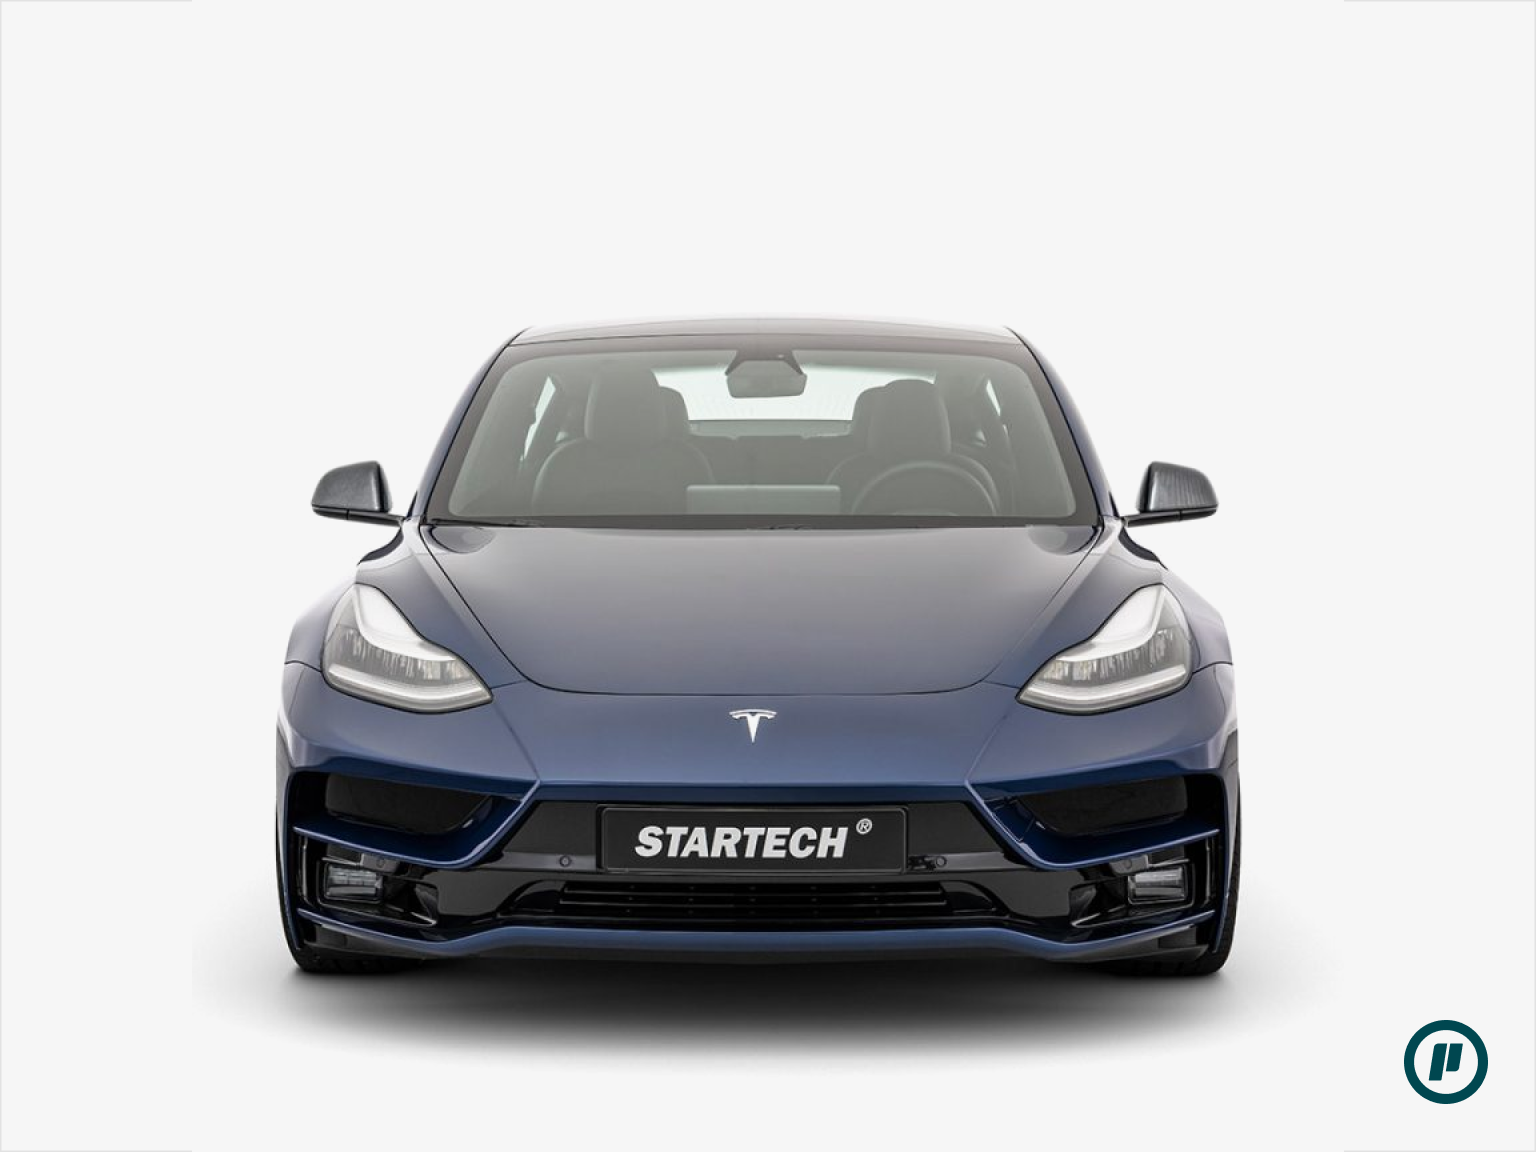 Startech Frontstoßstange für Tesla Model 3 (2017+)